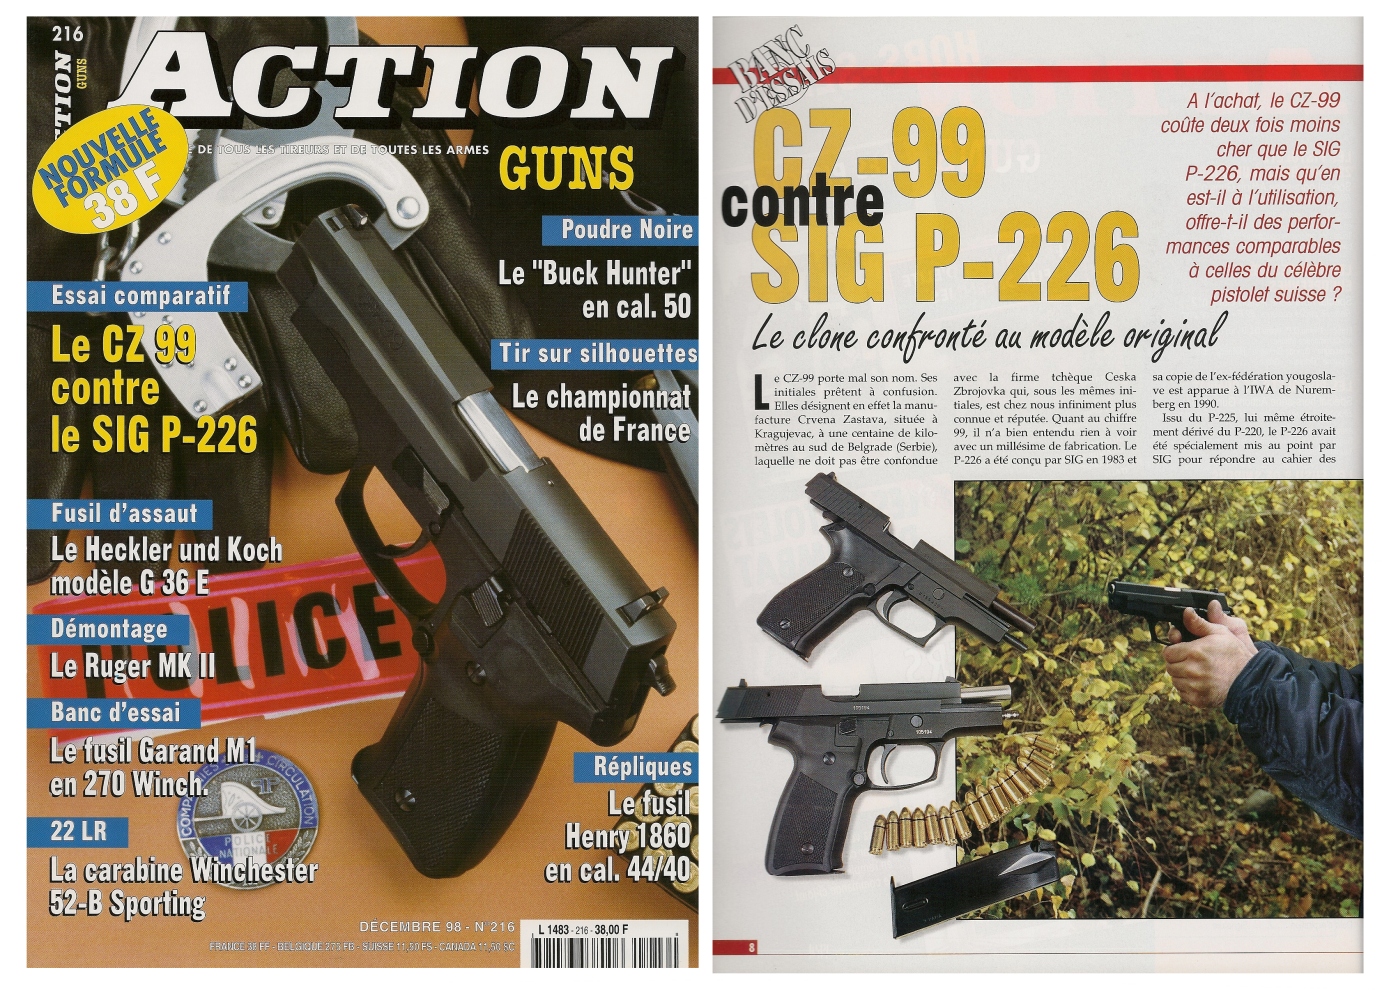 Le banc d’essai comparatif des pistolets Zastava CZ-99 et Sig-Sauer P-226 a été publié sur 6 pages dans le magazine Action Guns n°216 (décembre 1998). 